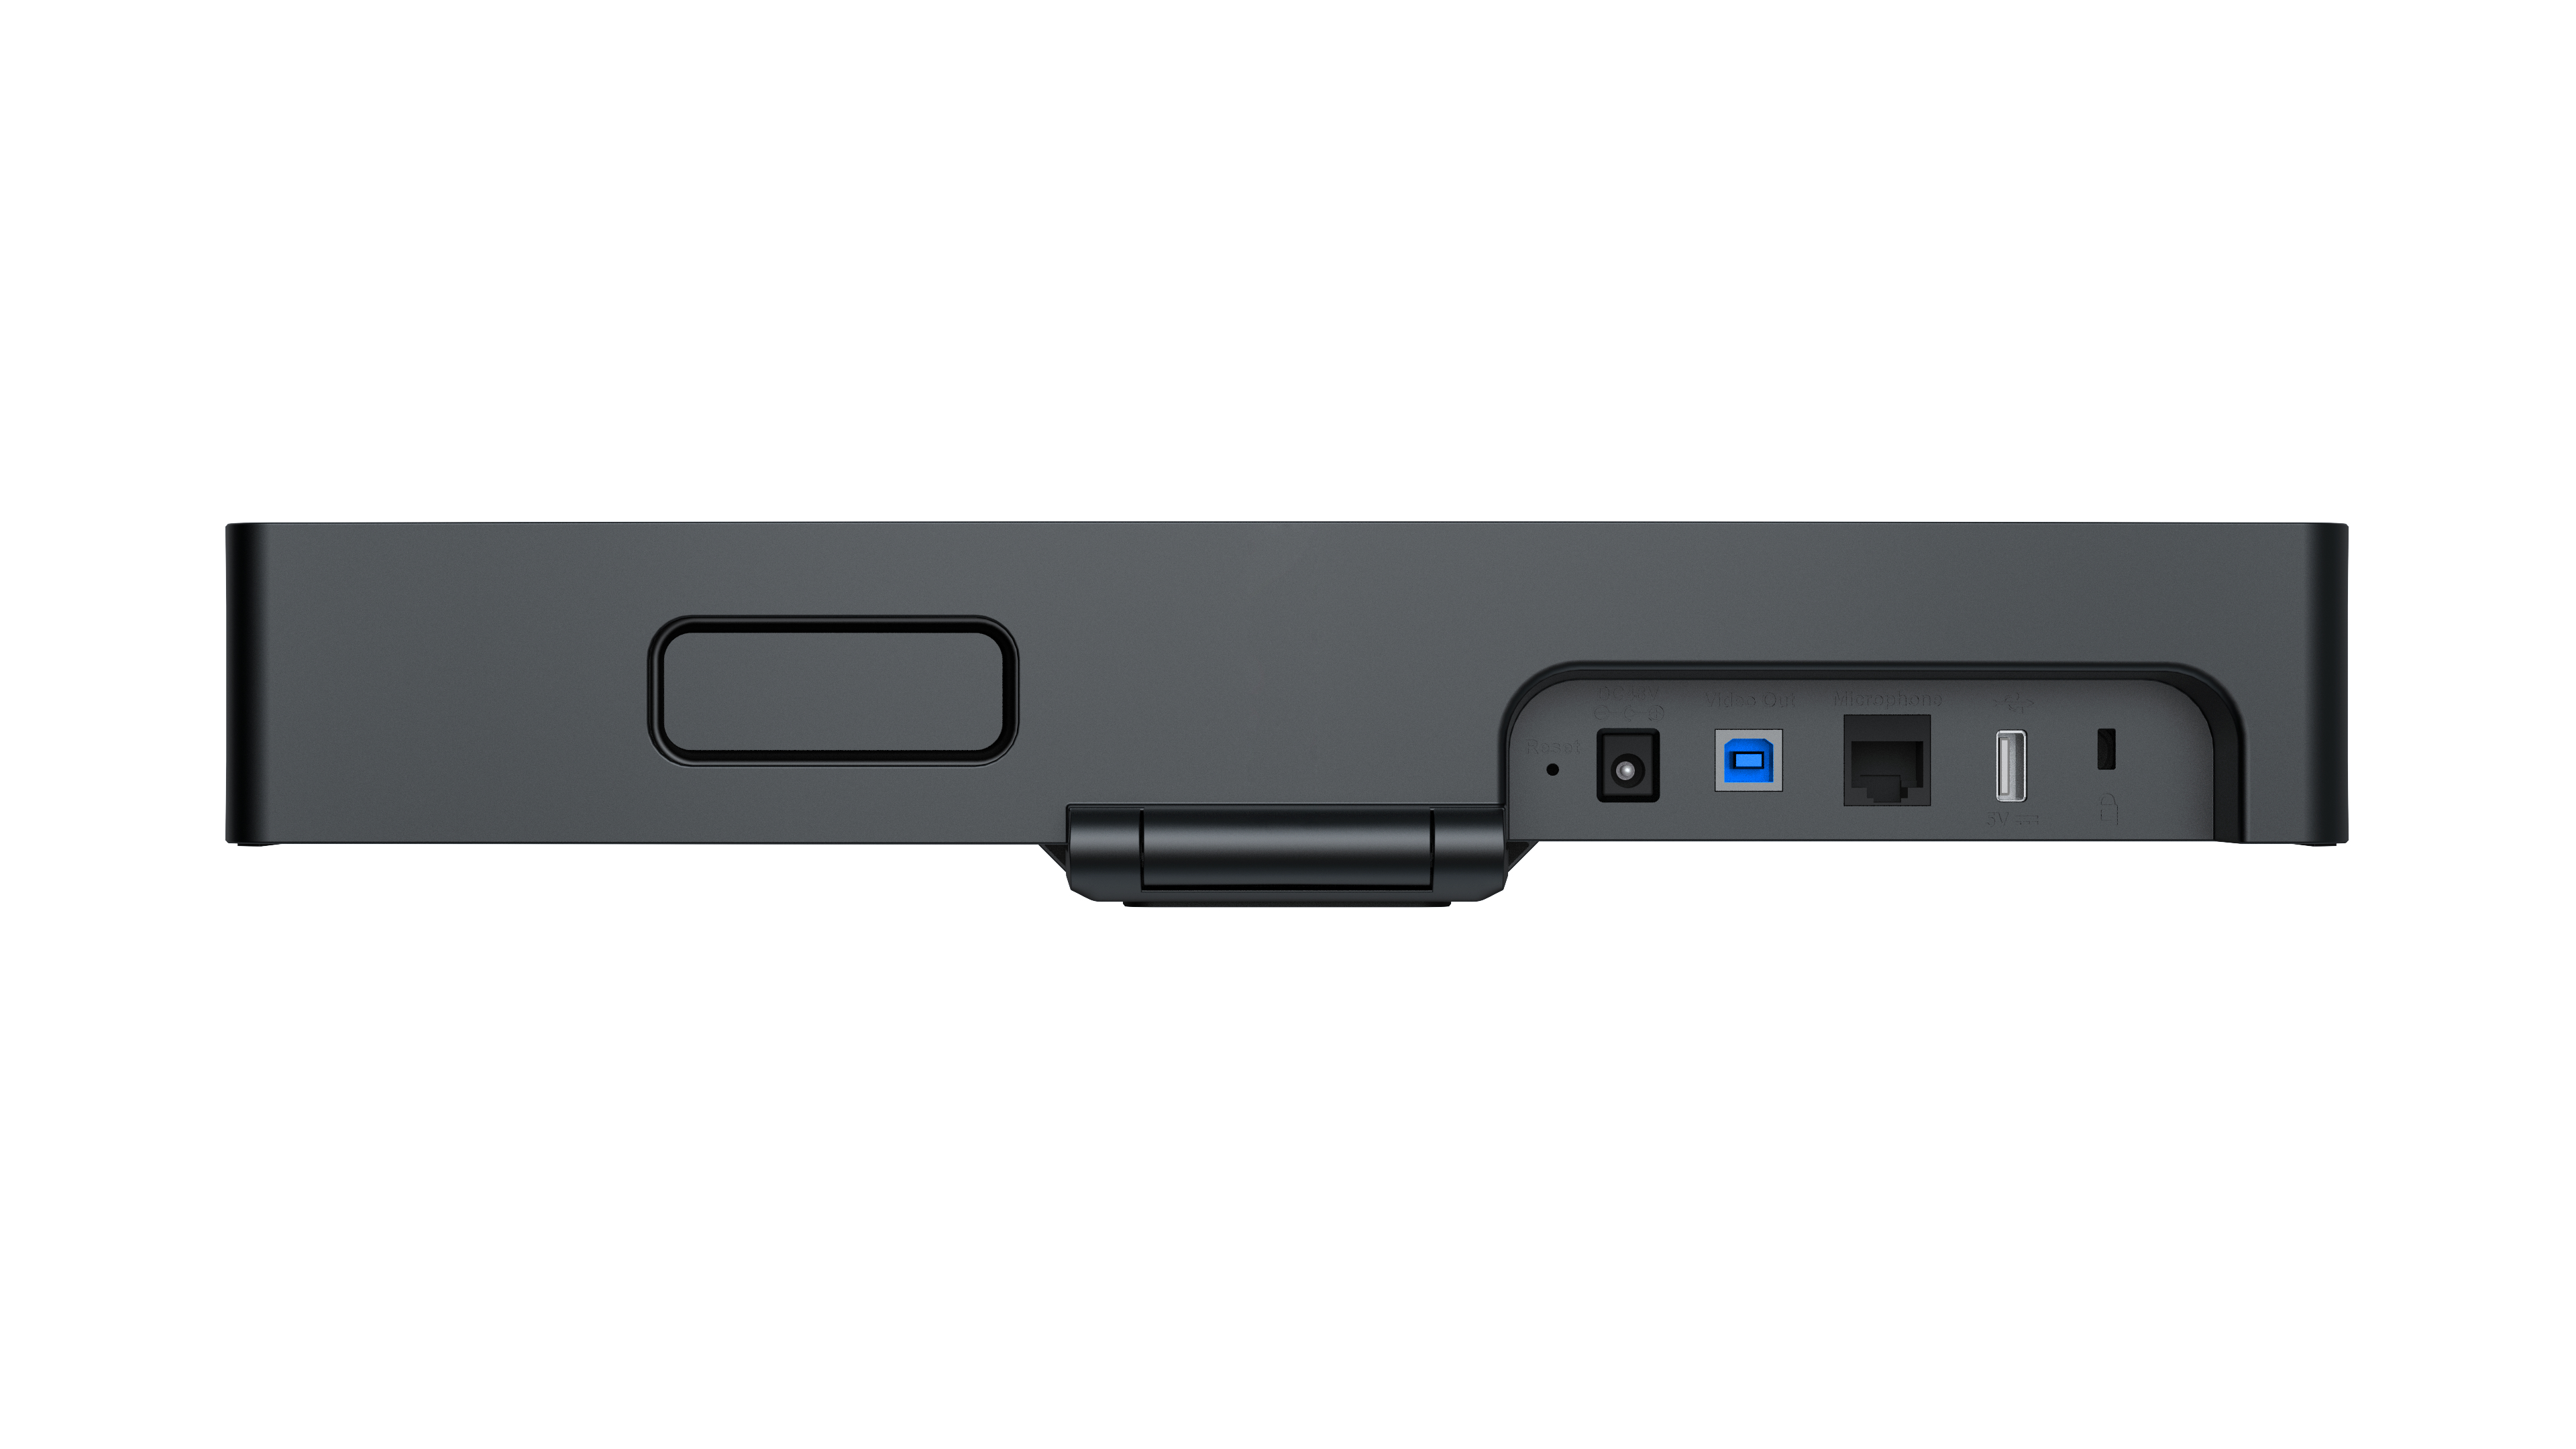 Yealink UVC34 - All-in-One-USB-Videobar - 4K - WiFi - integrierte Mikrofone und Lautsprecher -  für kleine Räume und Huddle Rooms